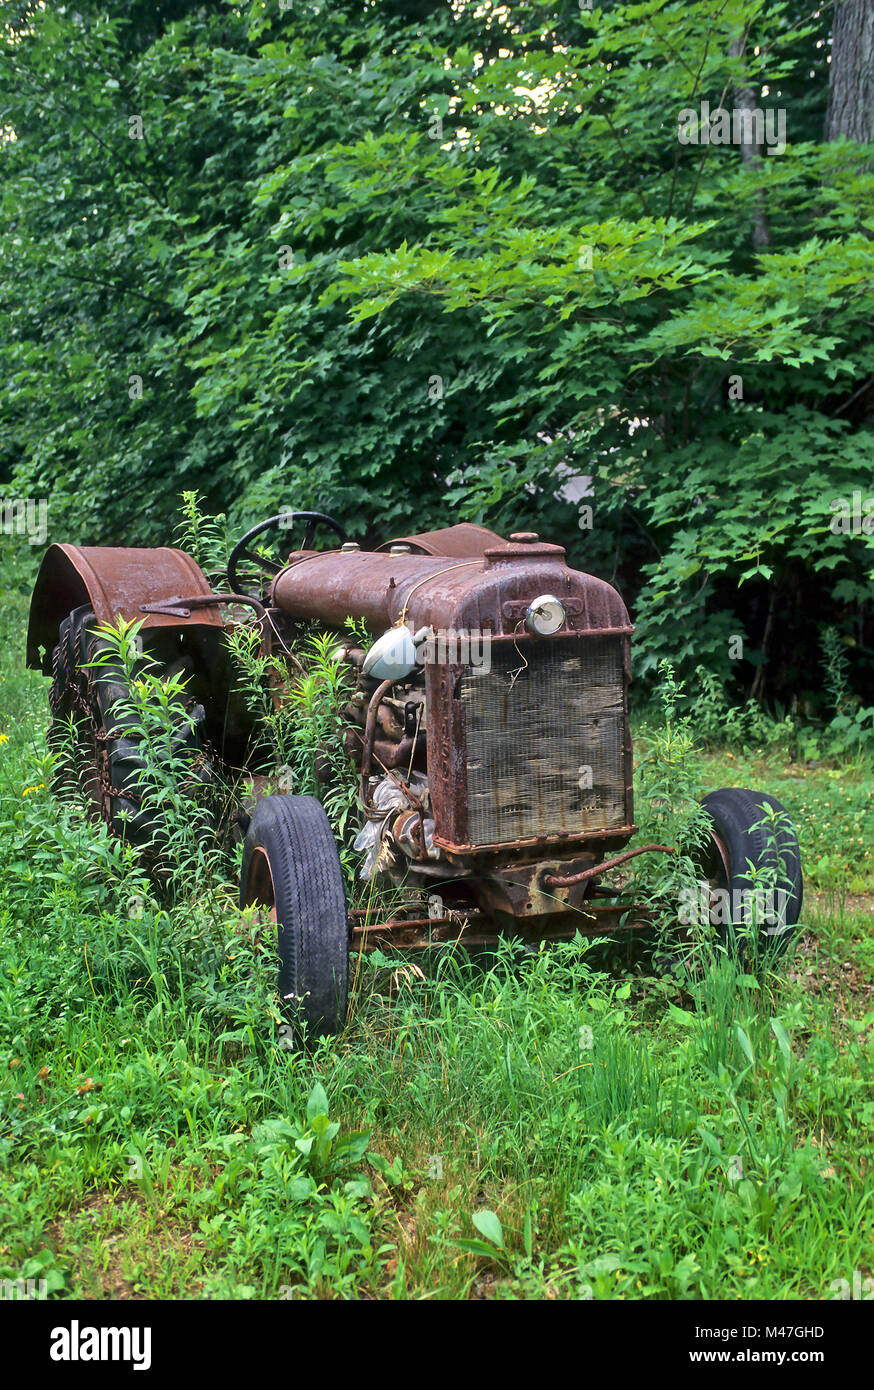 Eine alte, verrostete Fordson Traktor in einem Feld sitzt verlassen und wird immer mit Unkraut überwuchert. Stockfoto